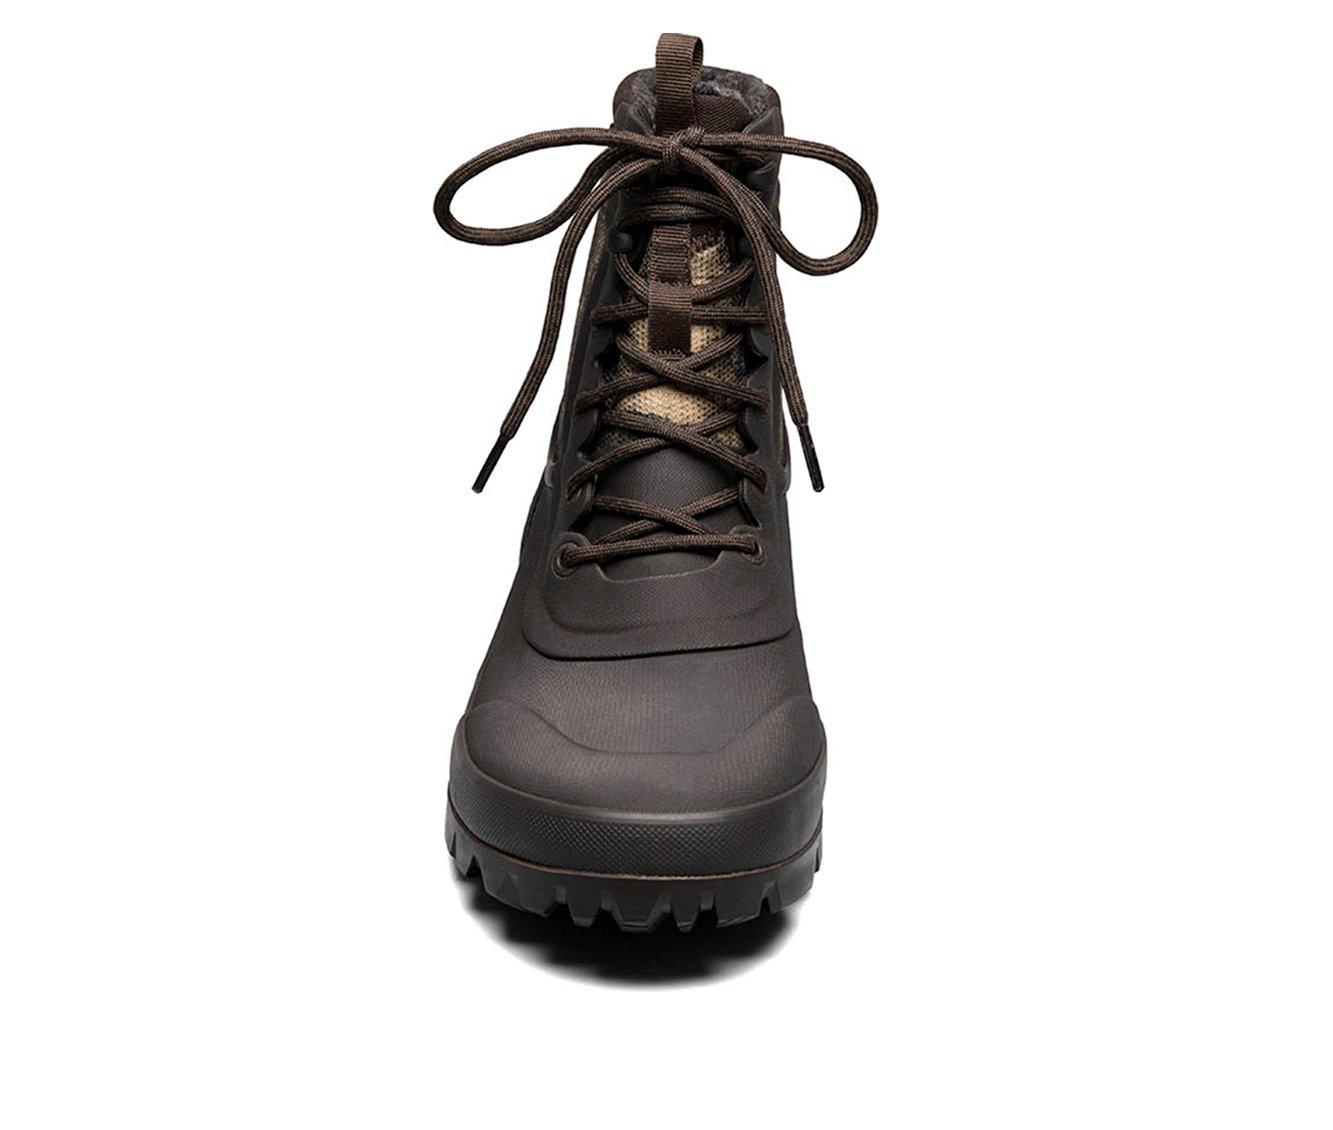 Men's Bogs Footwear Arcata Urban Lace-Up Waterproof Boots